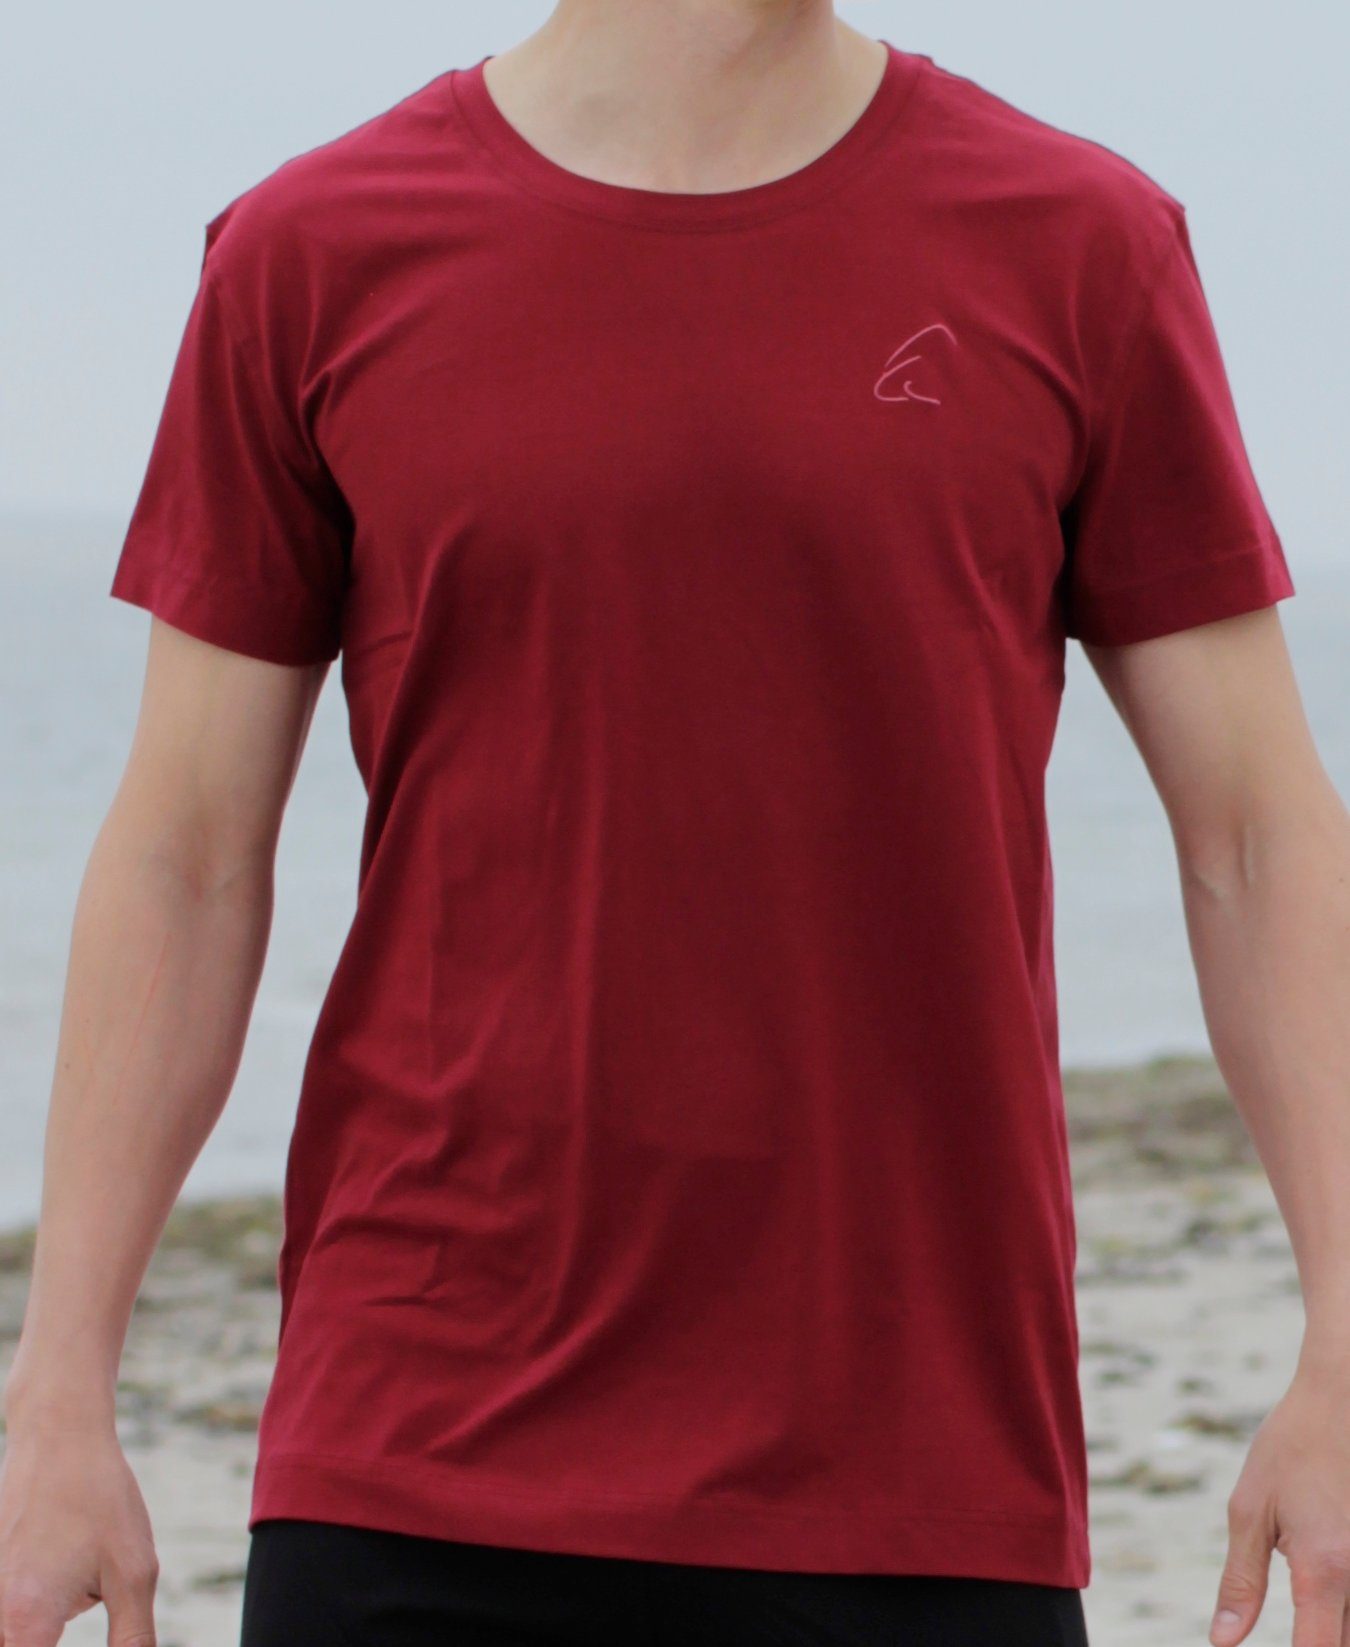 Granatrot für unisex, auch kühlend, geeignet Yogashirt Sommer T-Shirt im ESPARTO gut Bhaalu Herren leicht